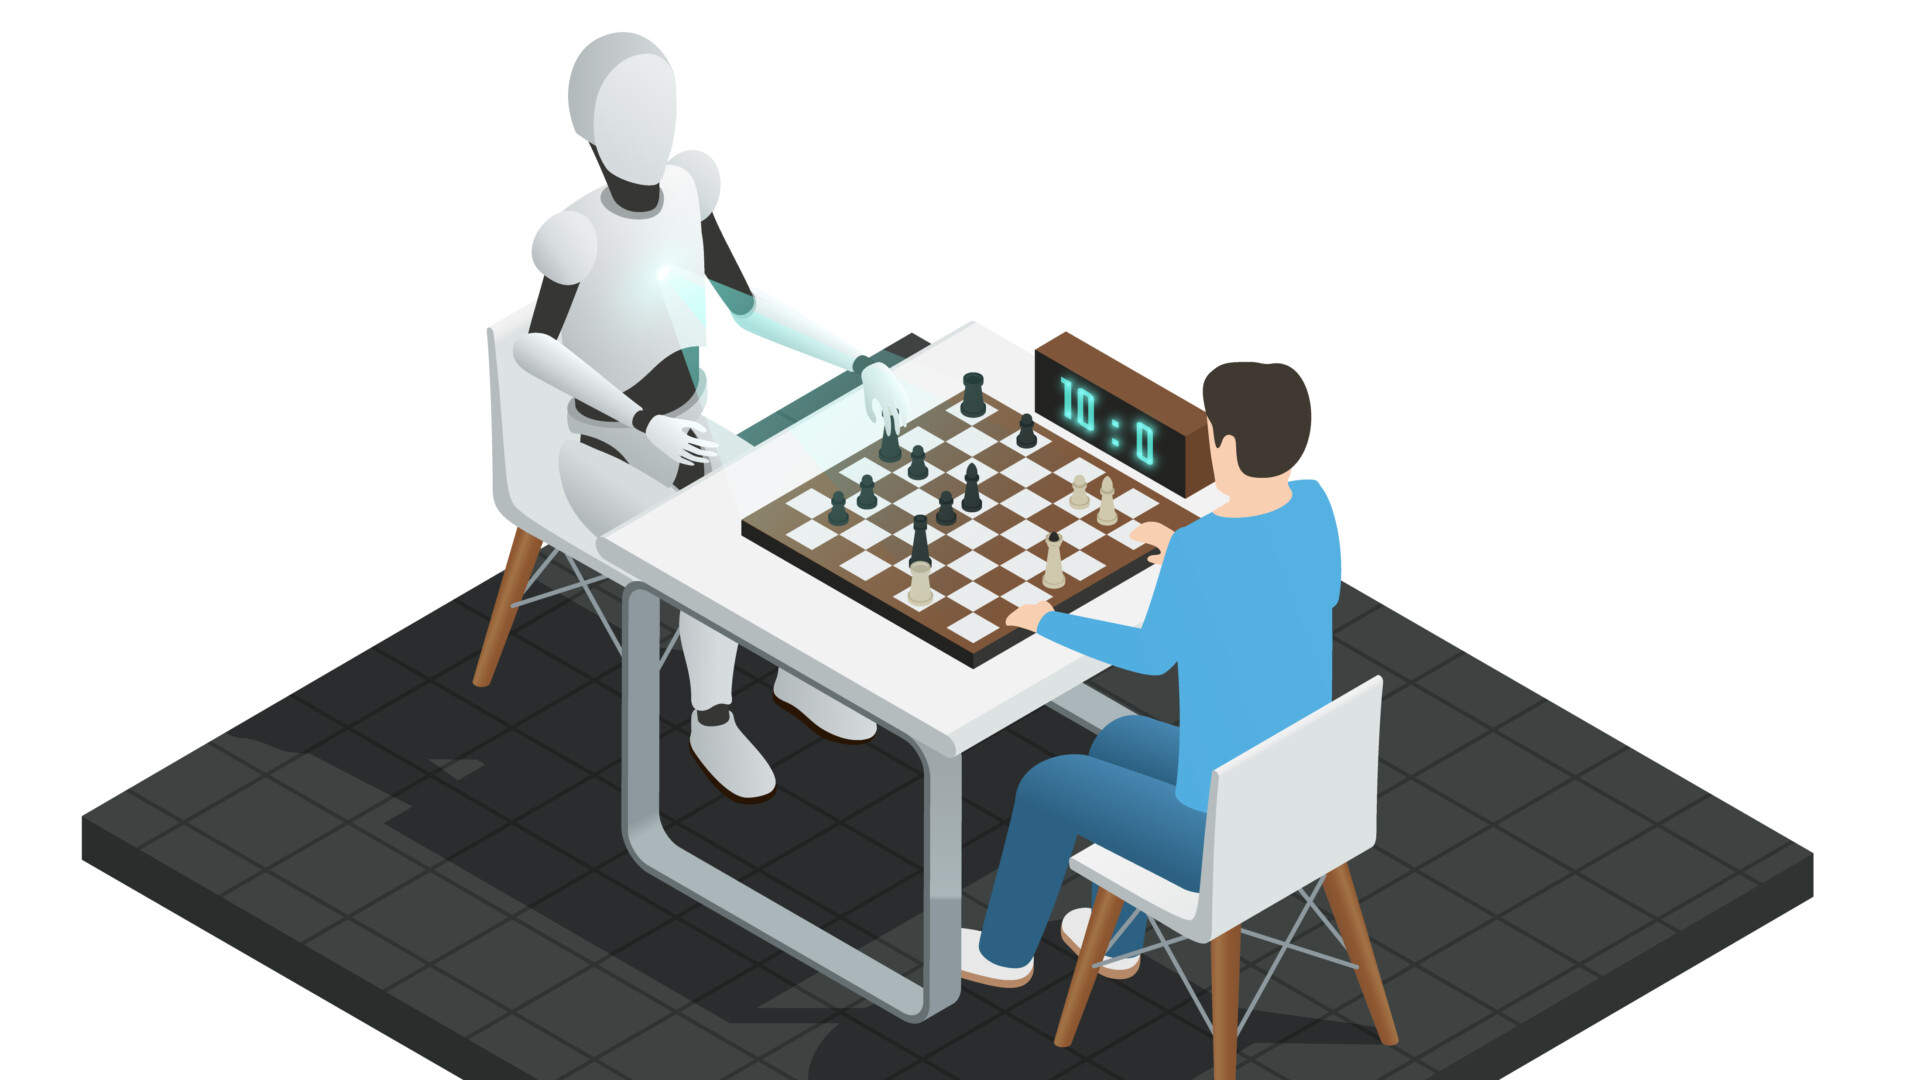 Warum ist Schach Sport? - Schach - Badische Zeitung